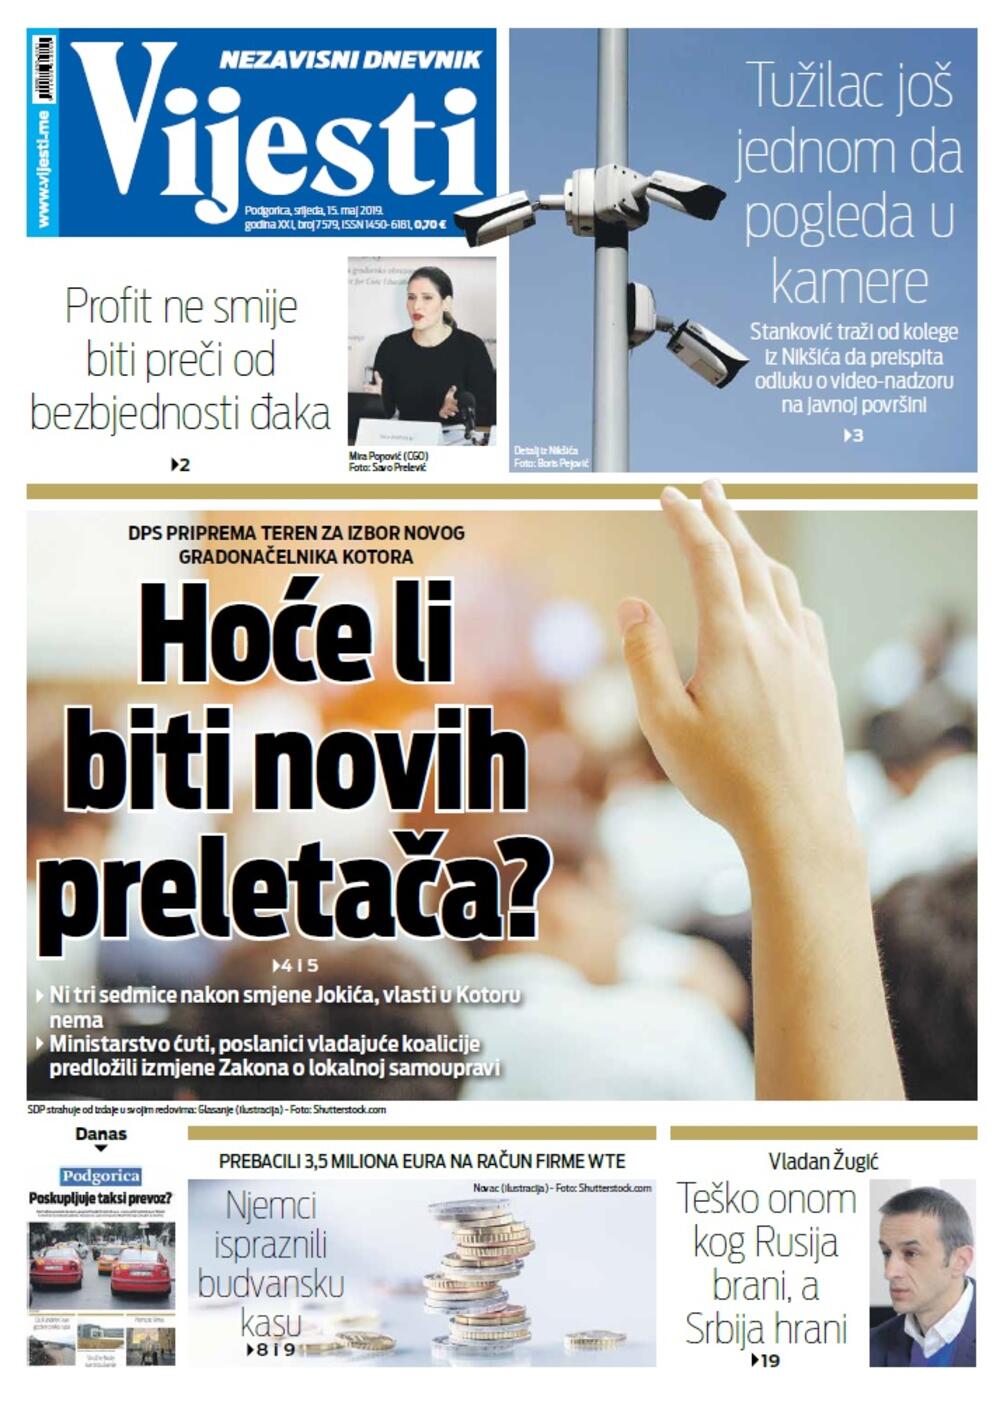 Naslovna strana "Vijesti" za 15. maj, Foto: Vijesti